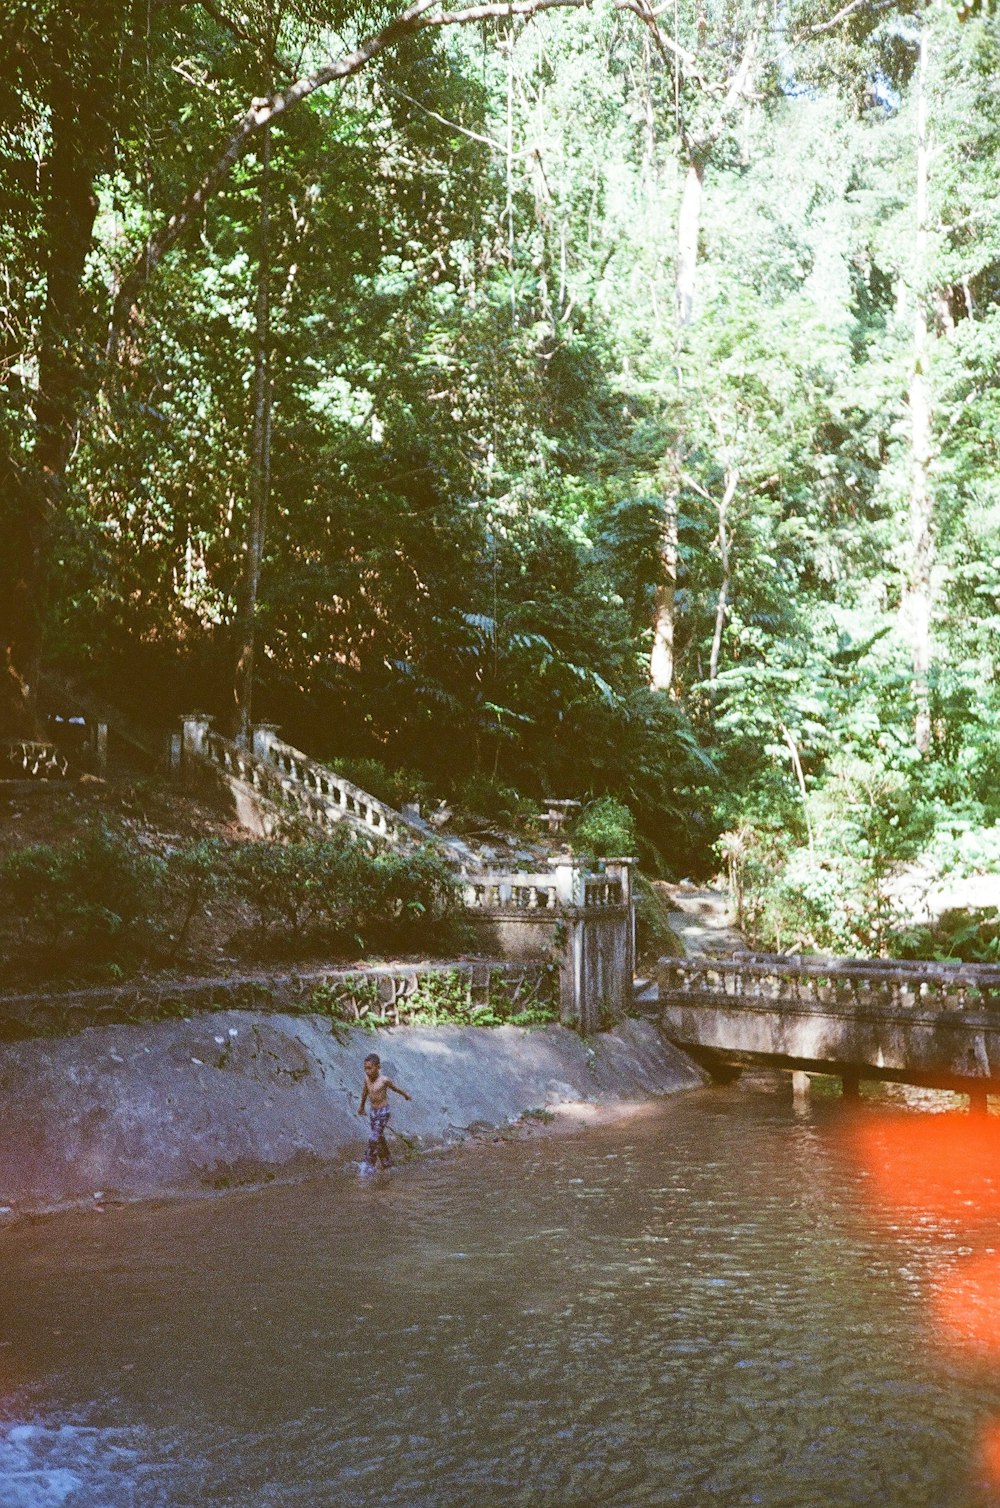 a person wading in a river near a bridge